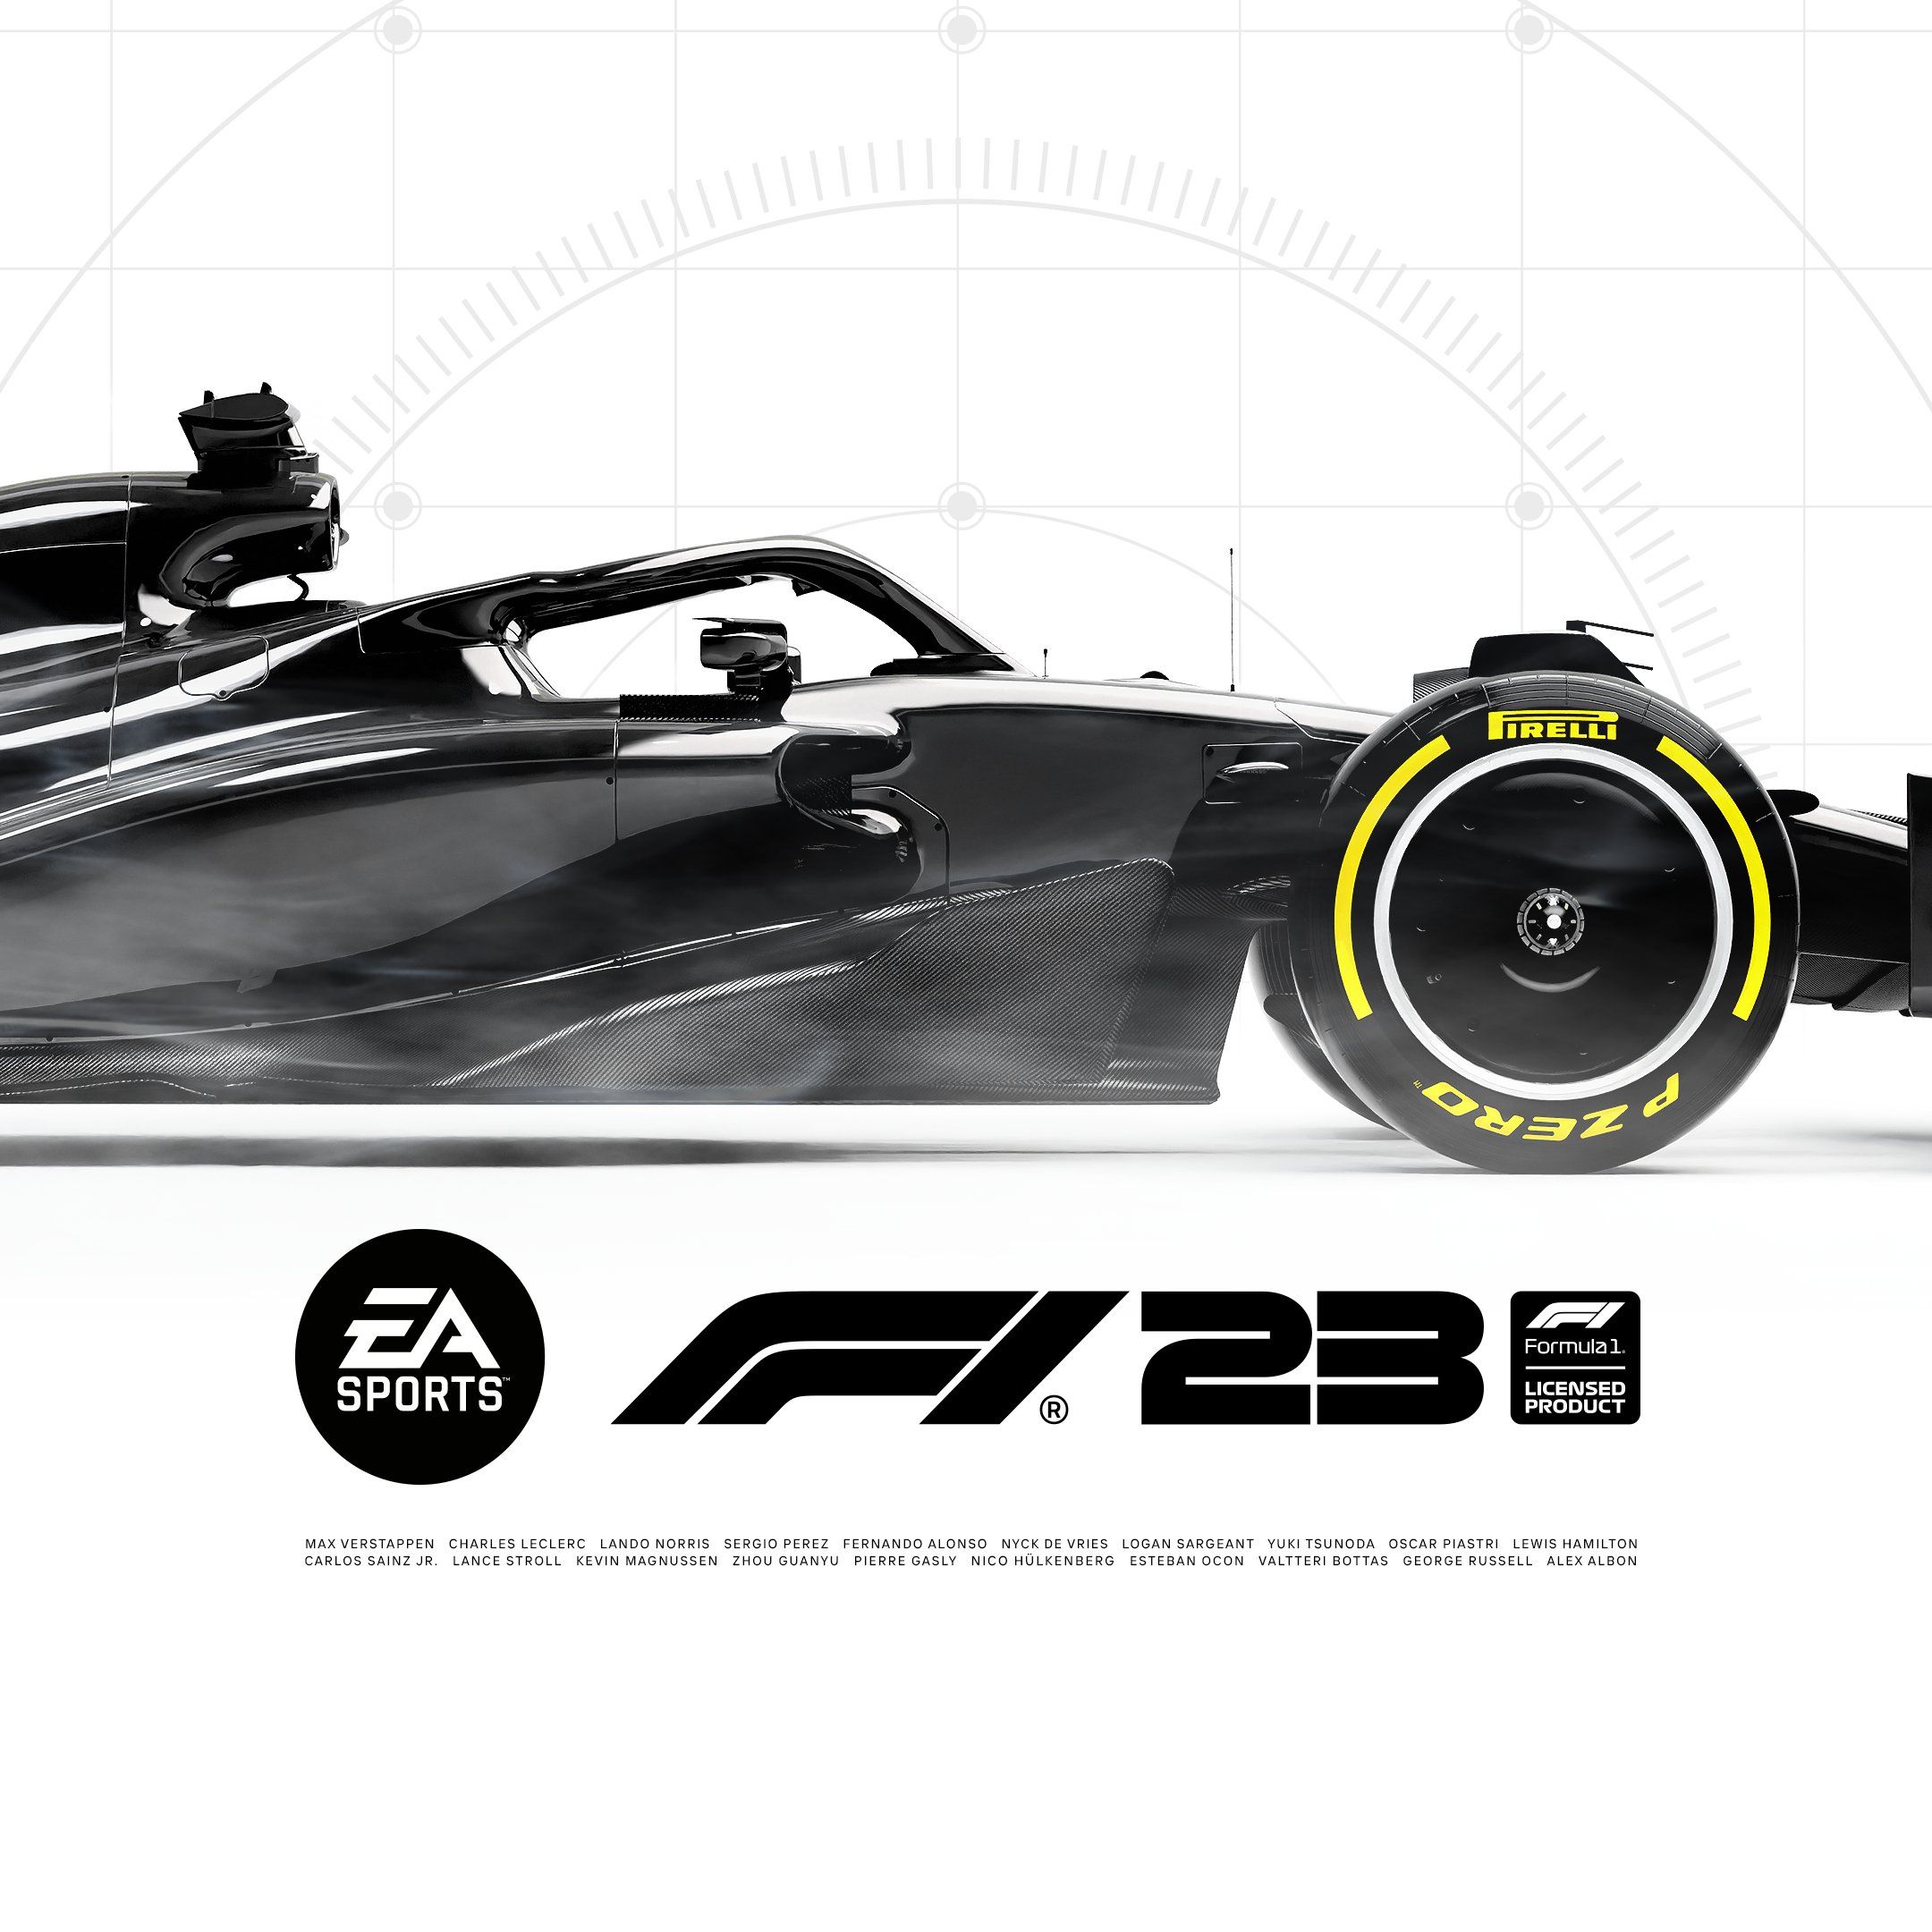 F1 23 Promo cover